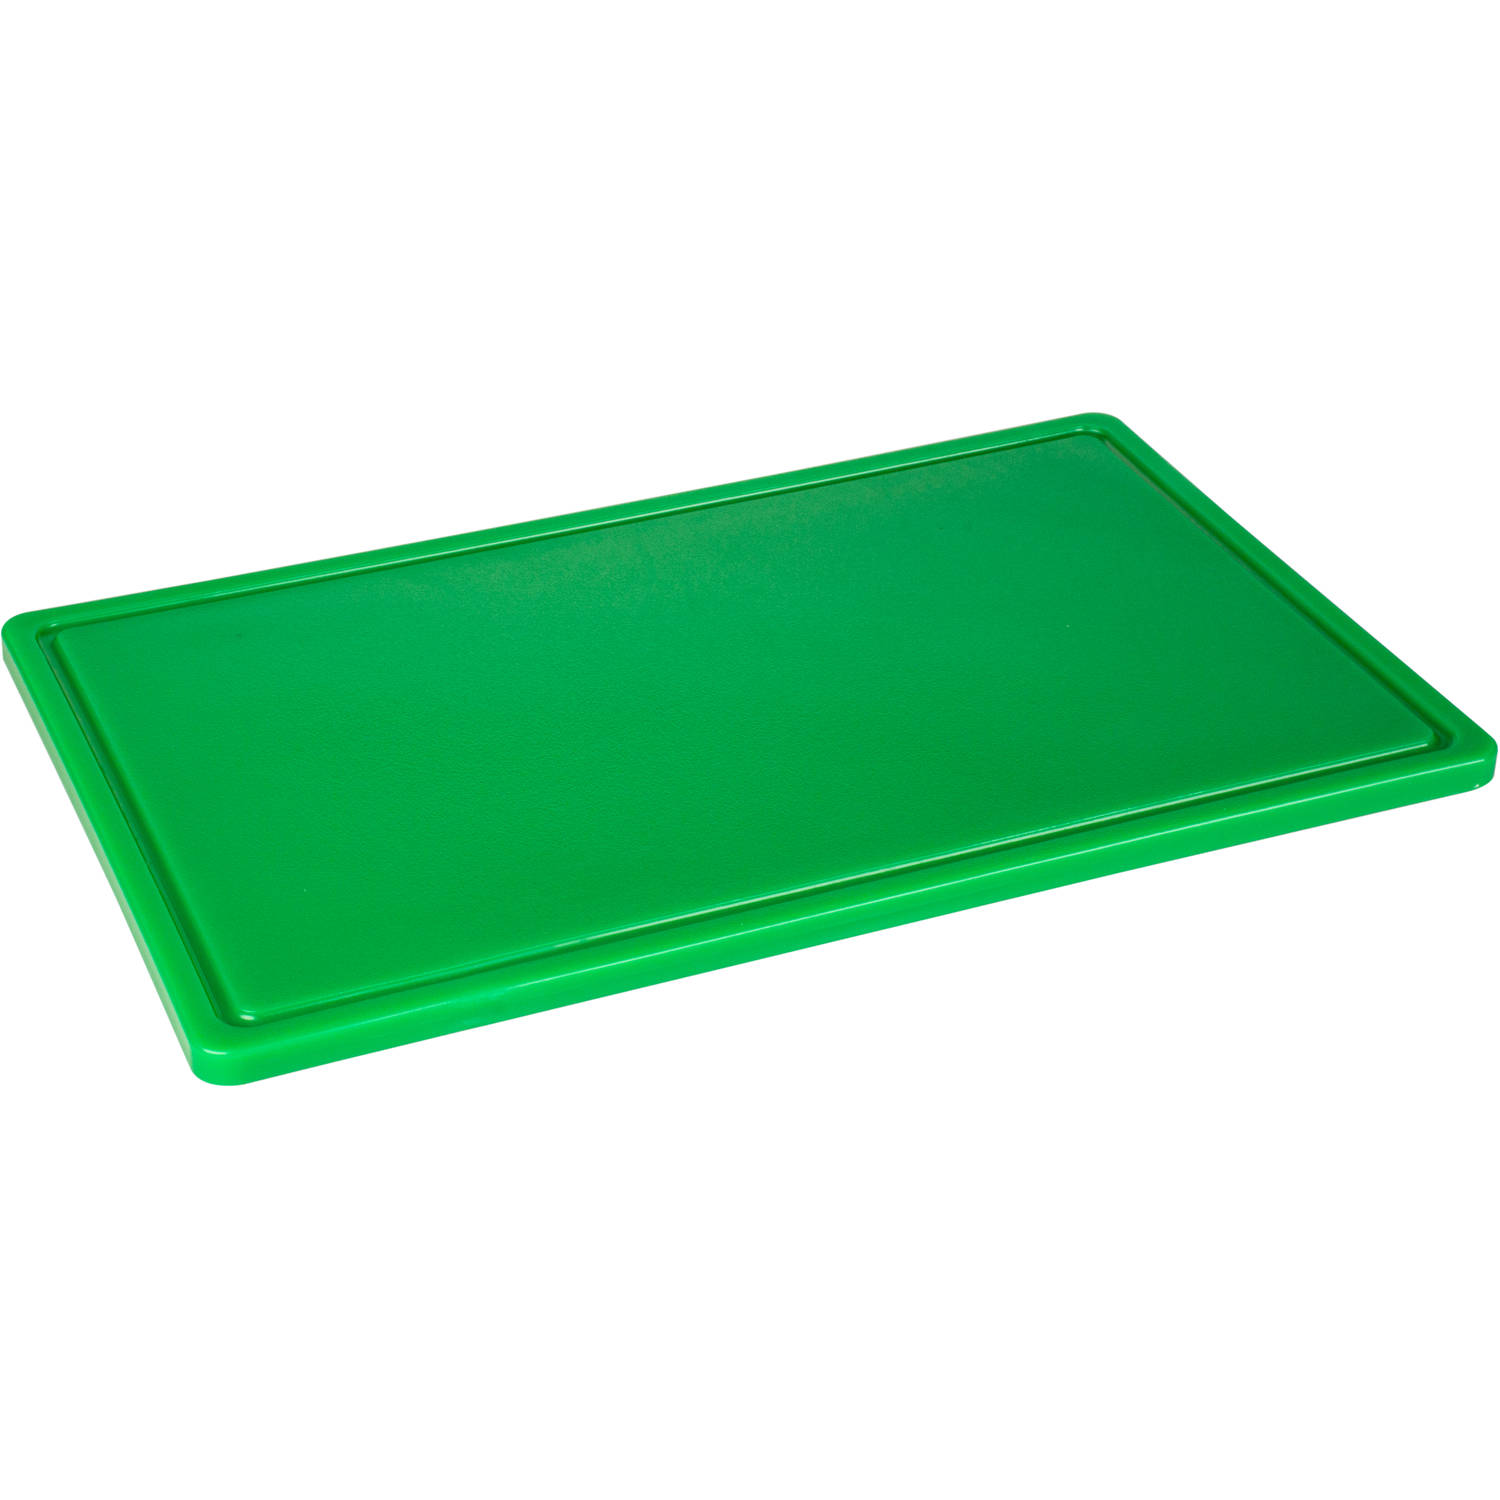 Snijplank met geul Hygiene 1/1 53 x 32.5 x 2 cm Polyethyleen Groen